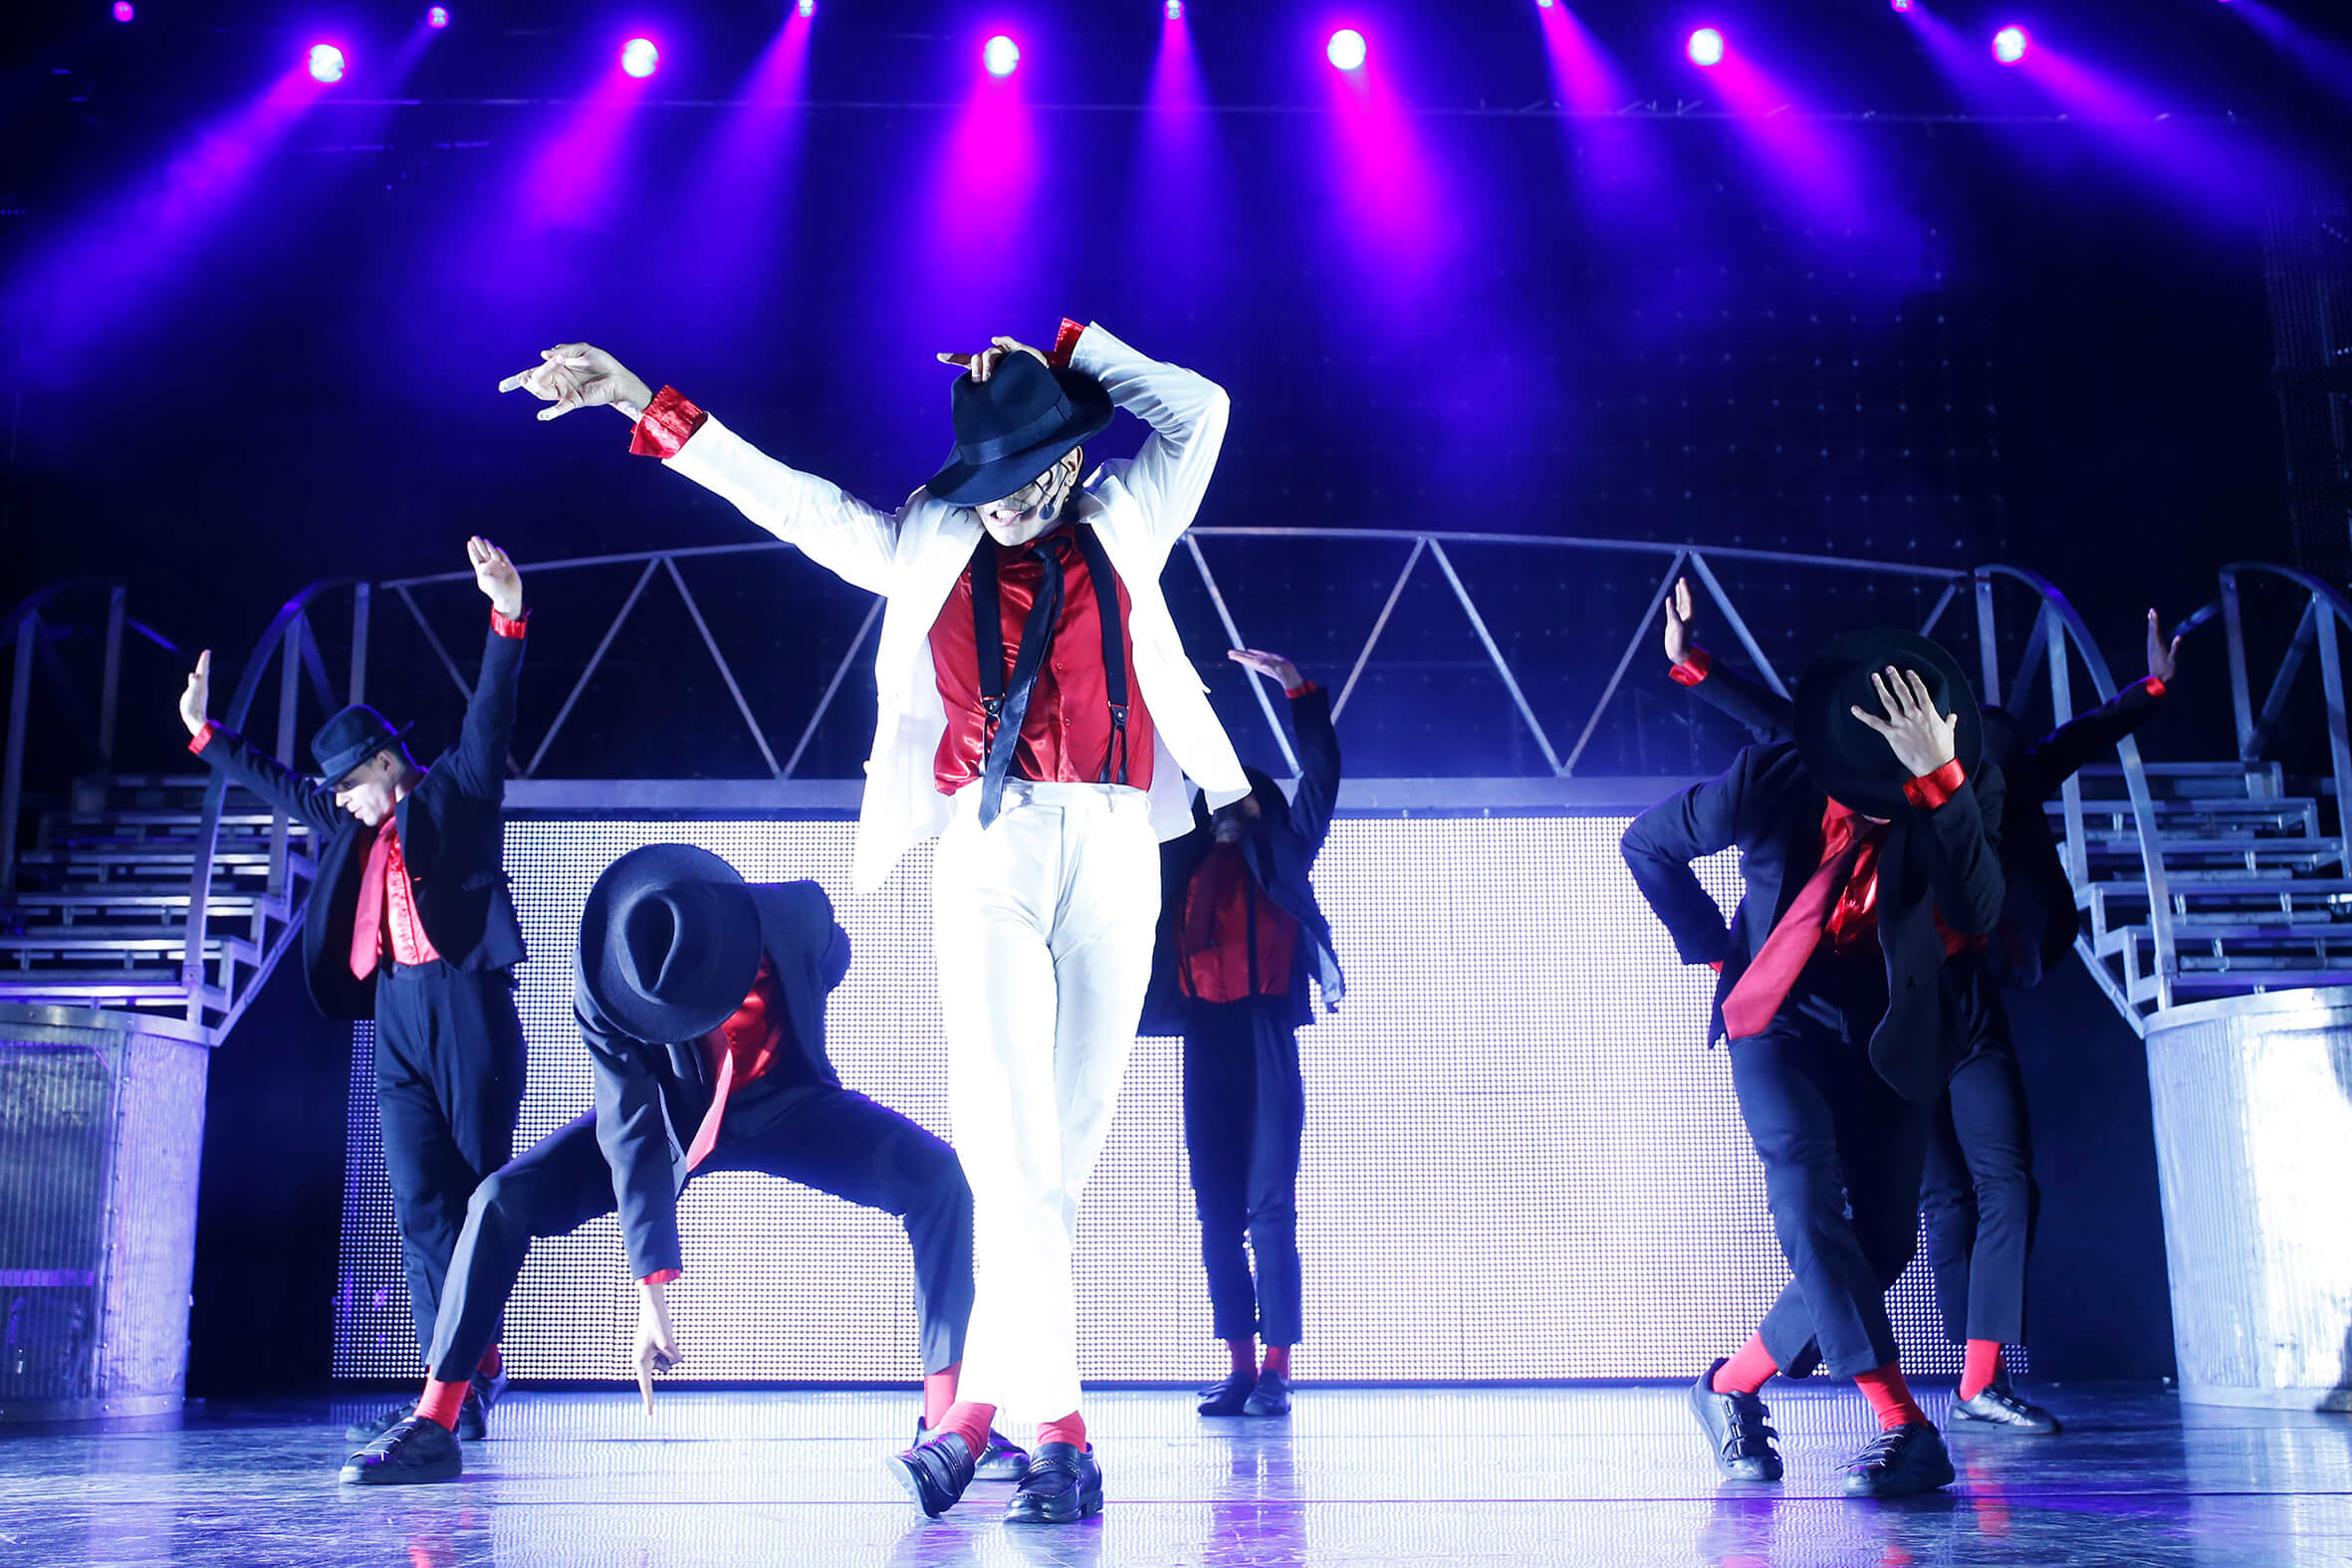 Szenenfoto aus dem Musical Thriller Live über Michael Jackson